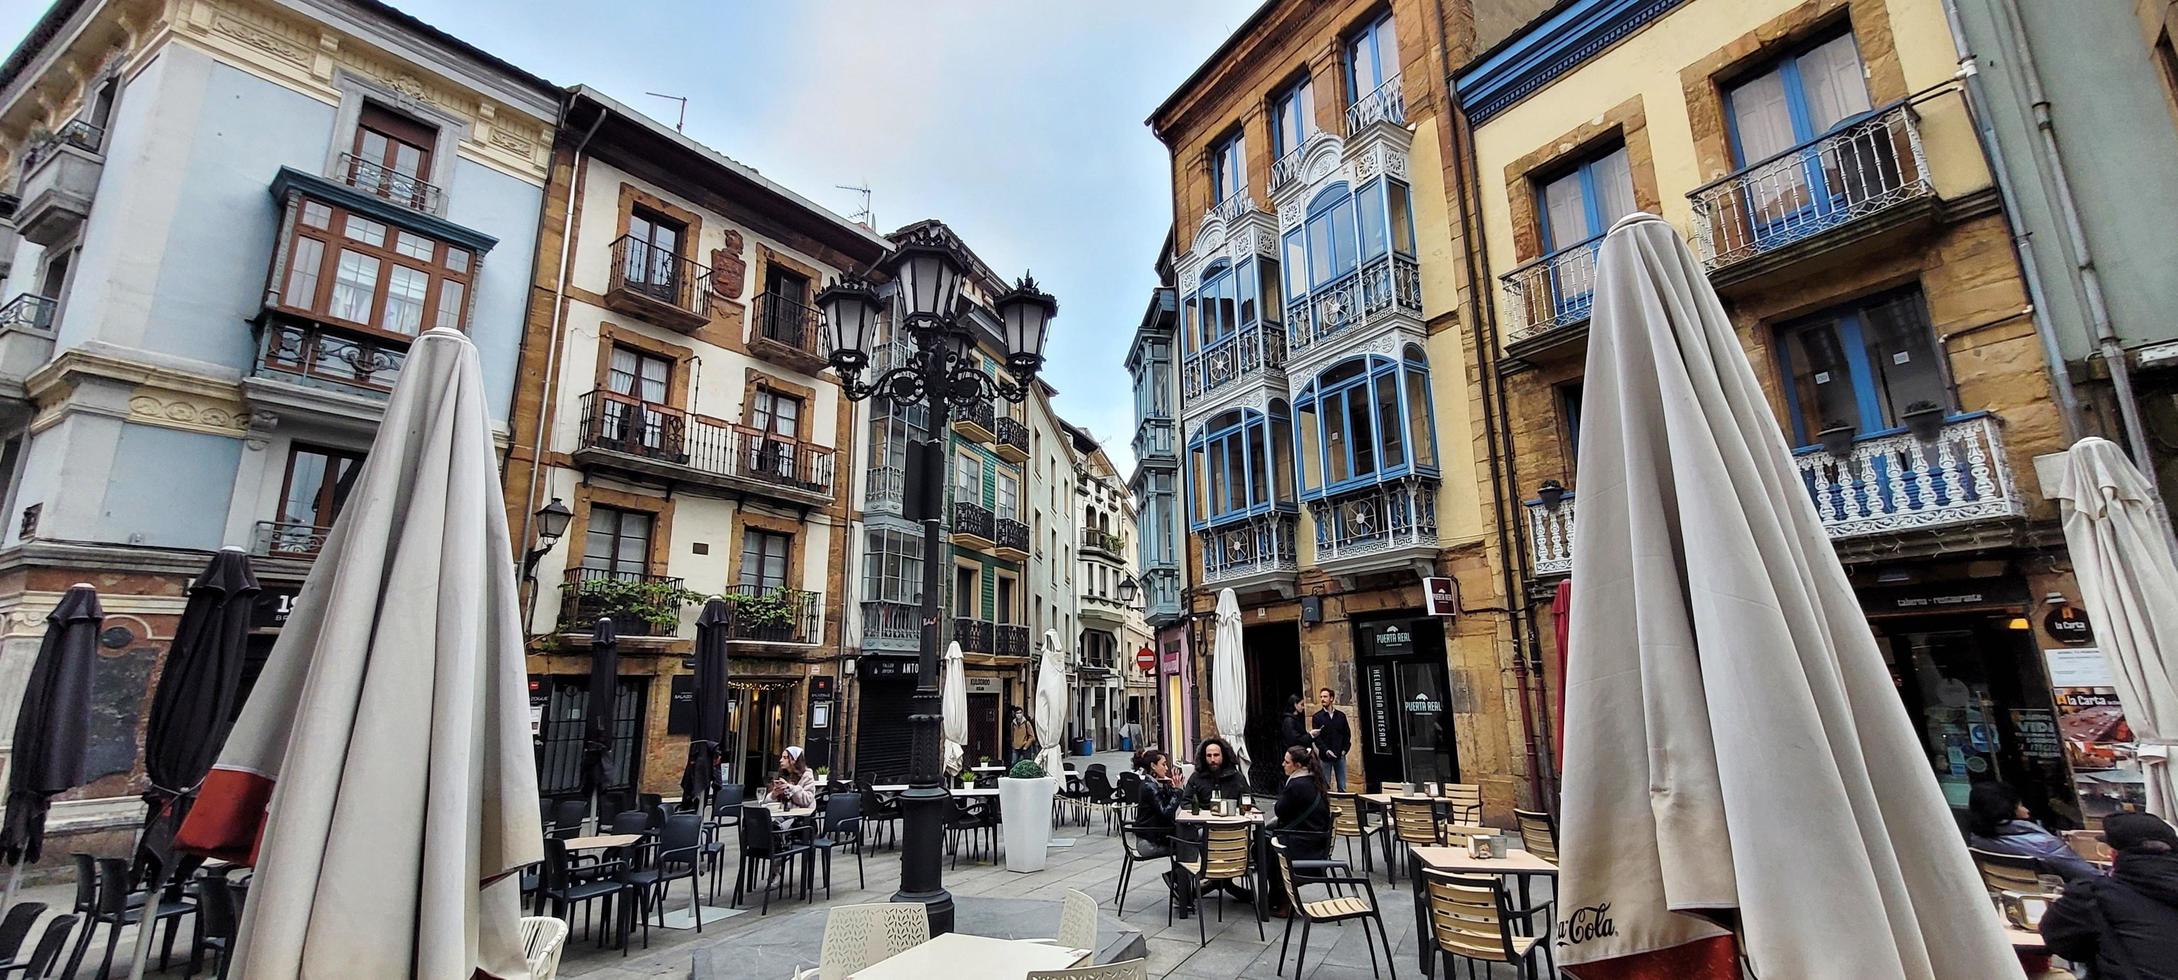 Oviedo old city streets, Asturias, Spain, April 2022 photo